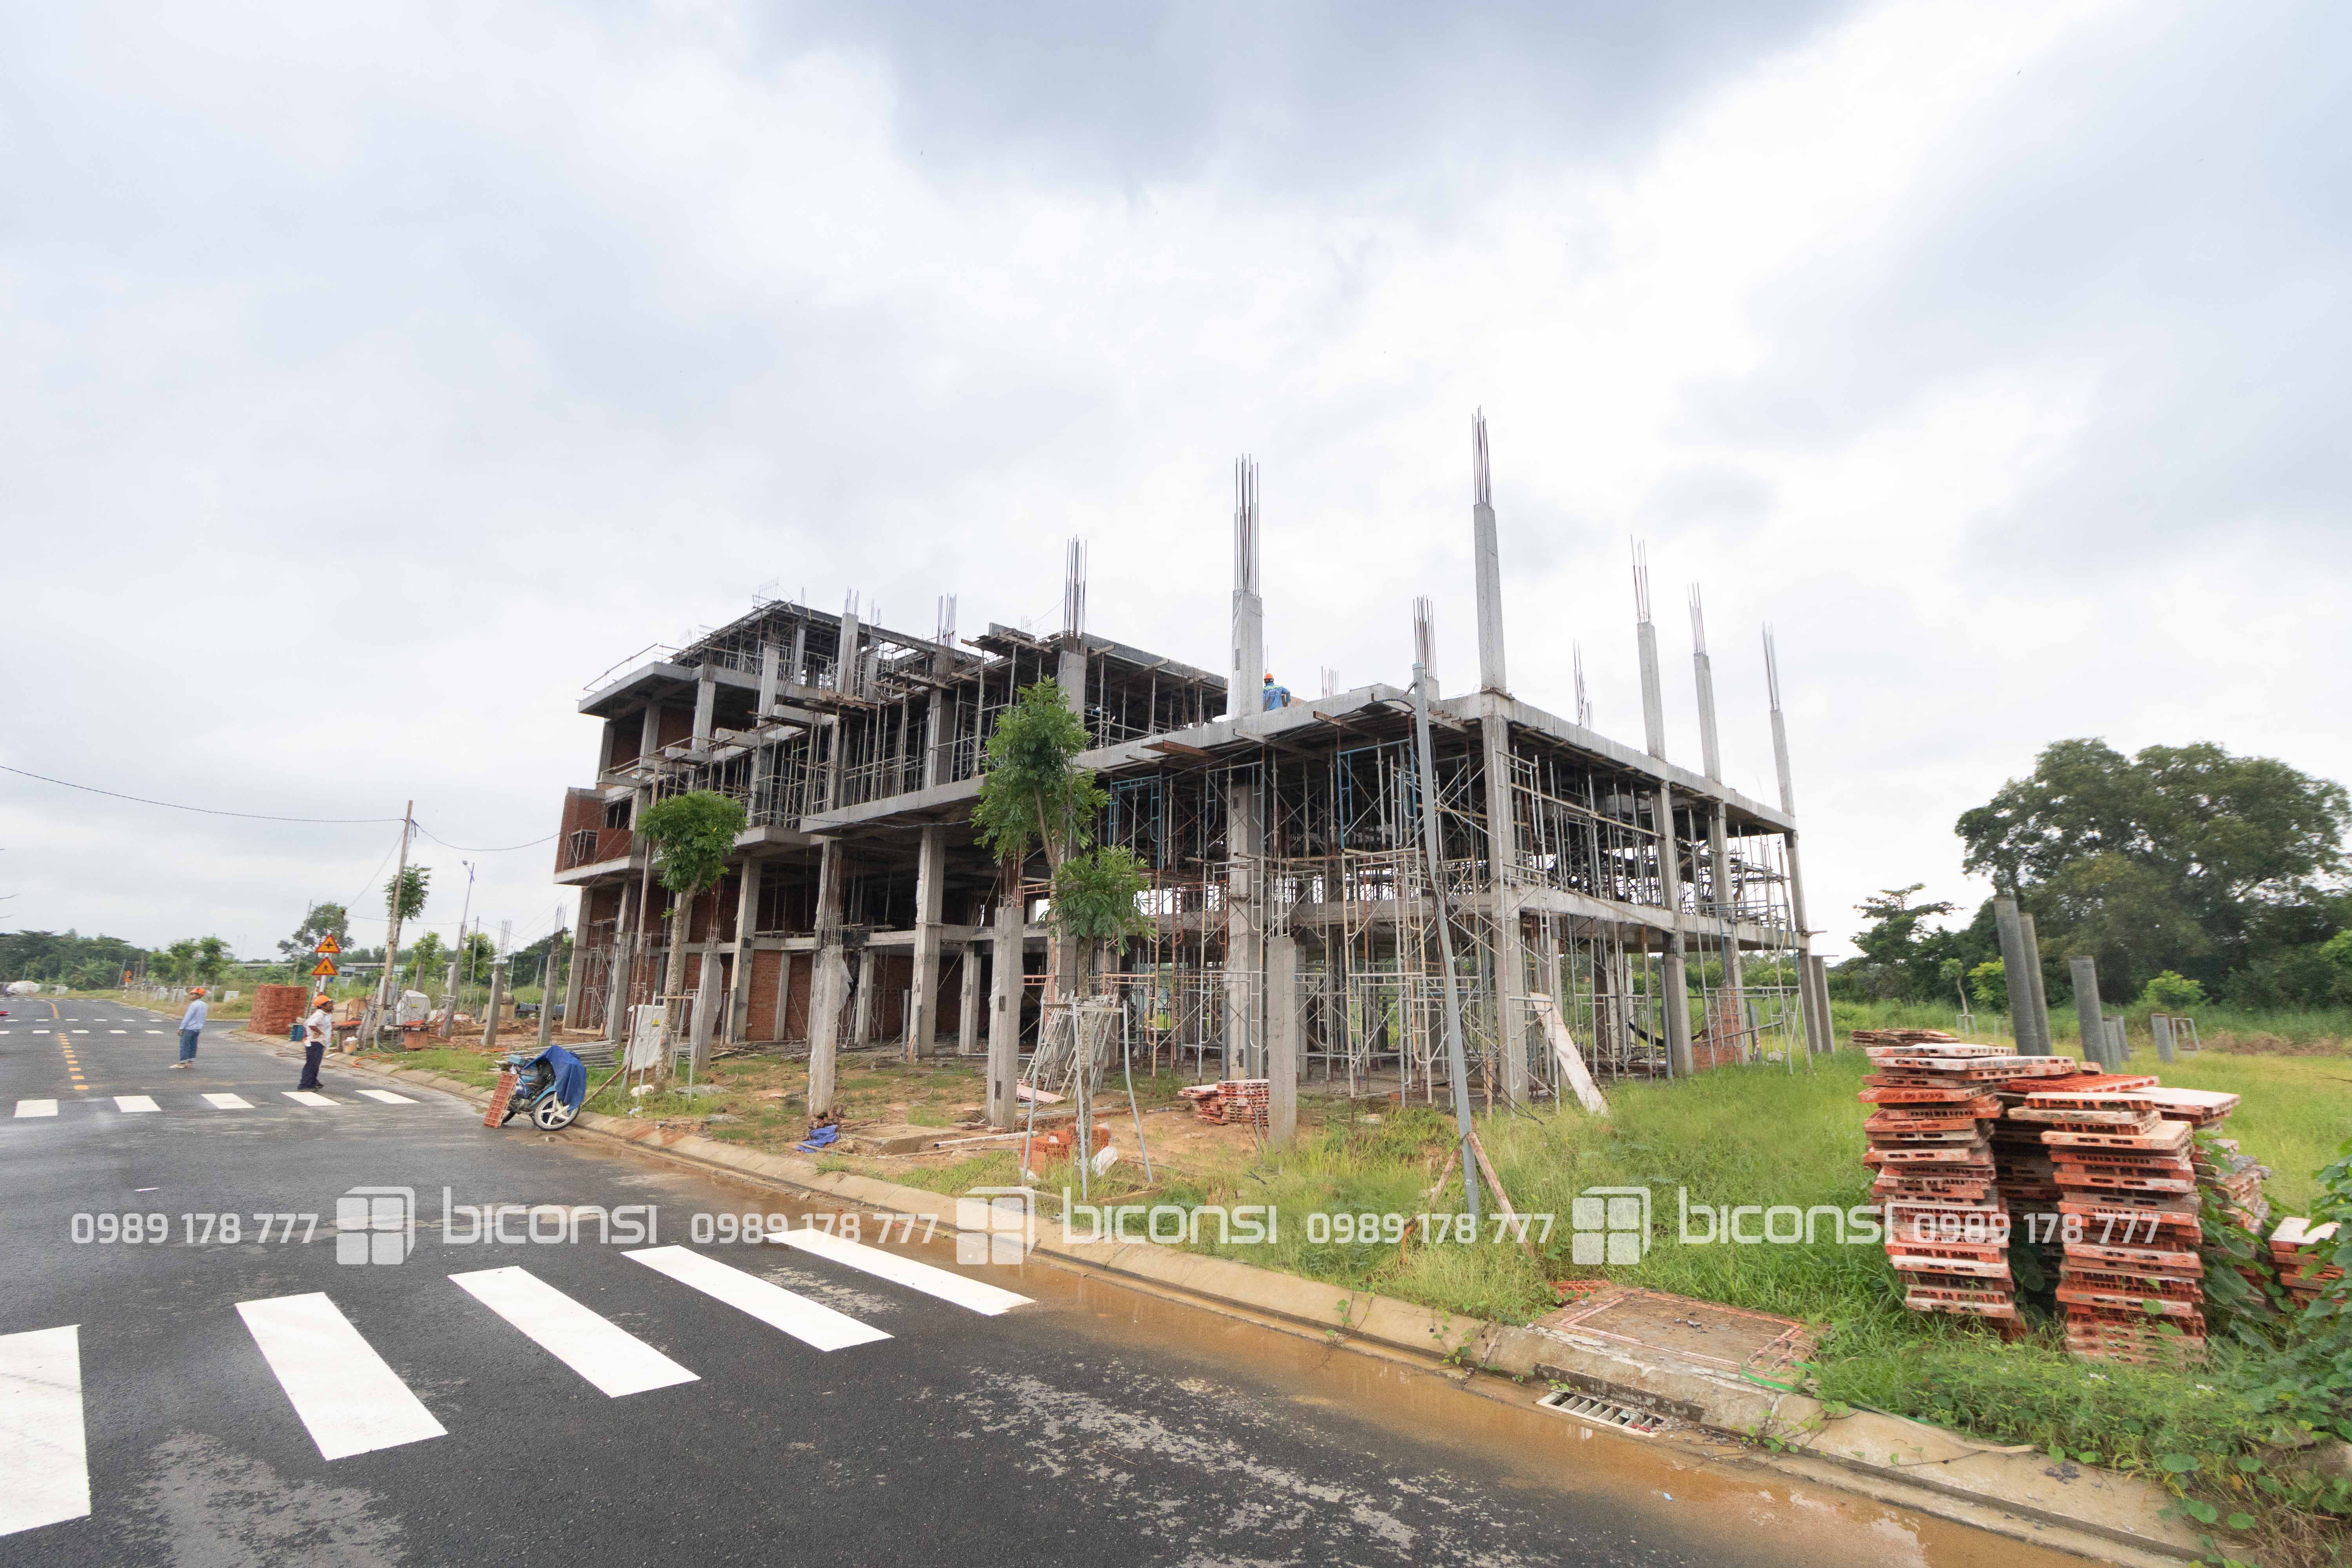 Tiến độ dự án Khu nhà ở Biconsi Riverside tại P. Uyên Hưng, Tx. Tân Uyên - Tháng 10/2020